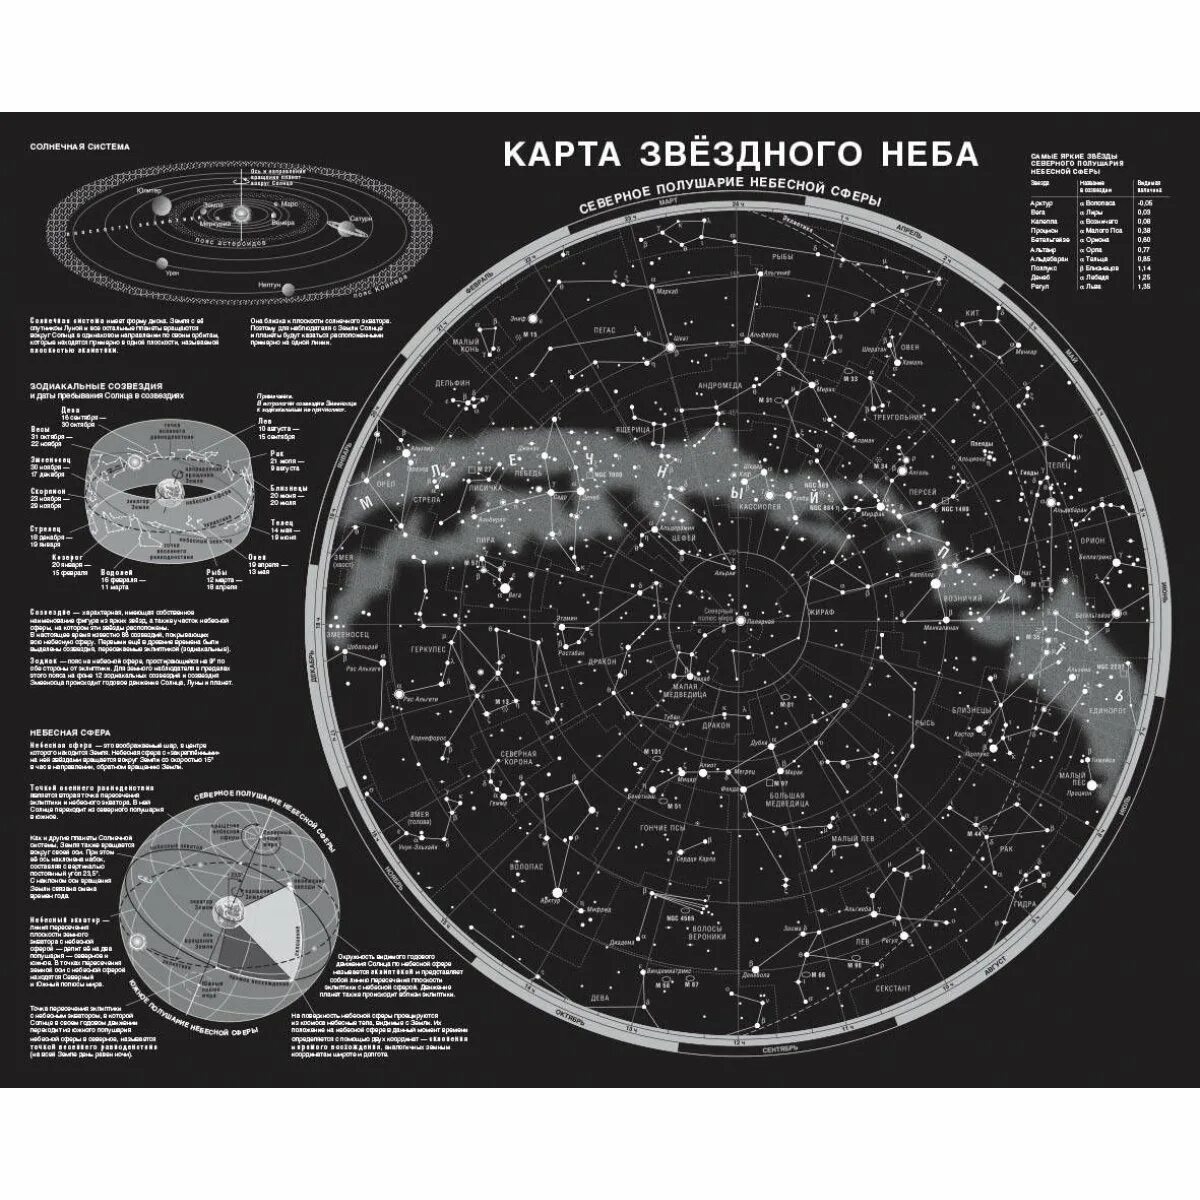 Астрономия созвездия карта звездного неба. Карта звёздного неба Северное полушарие подробная. Атлас звездного неба Северного полушария с созвездиями.